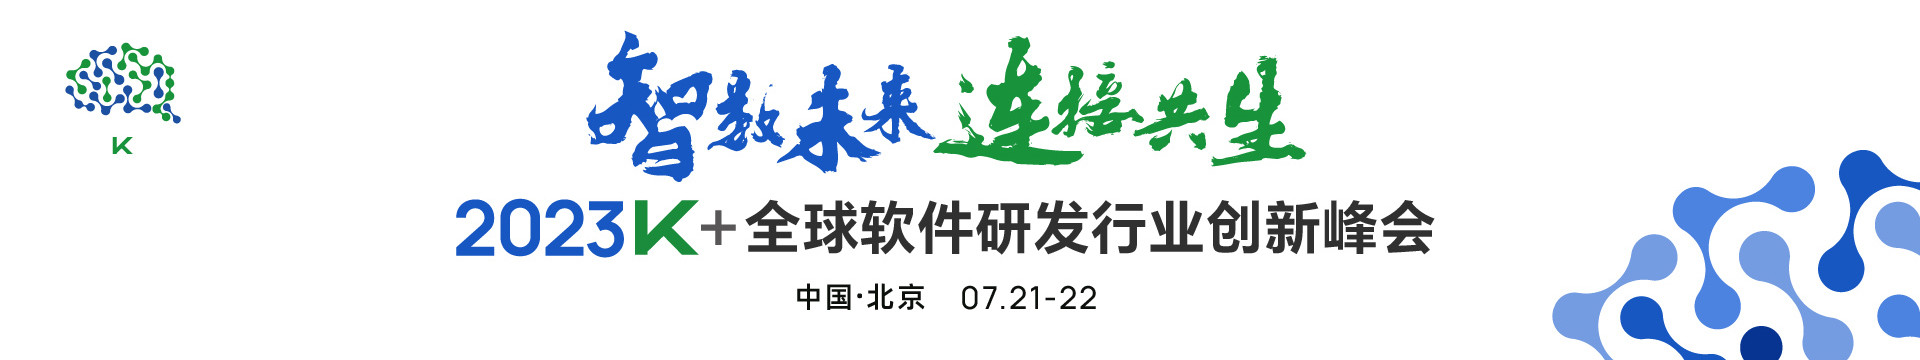 2023K+全球軟件研發行業創新峰會·北京站